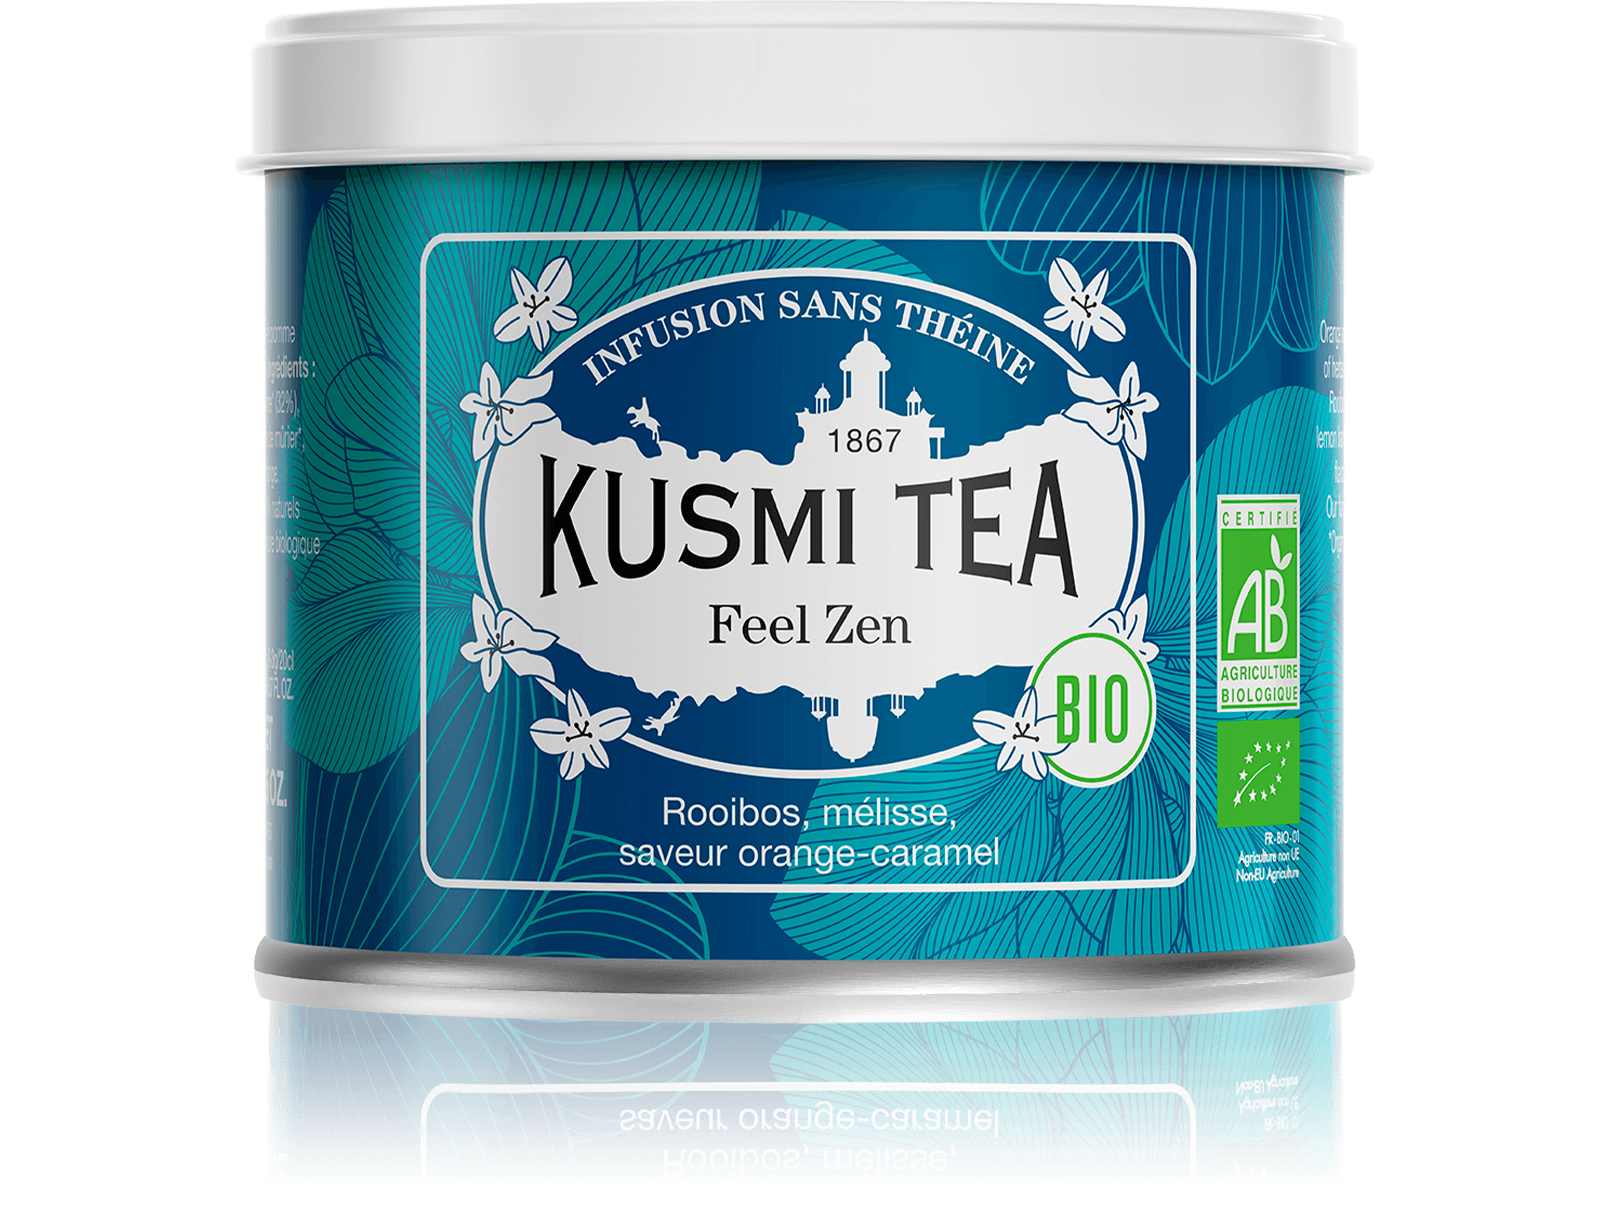 Feel Zen (Organic herbal tea) - Kusmi Tea